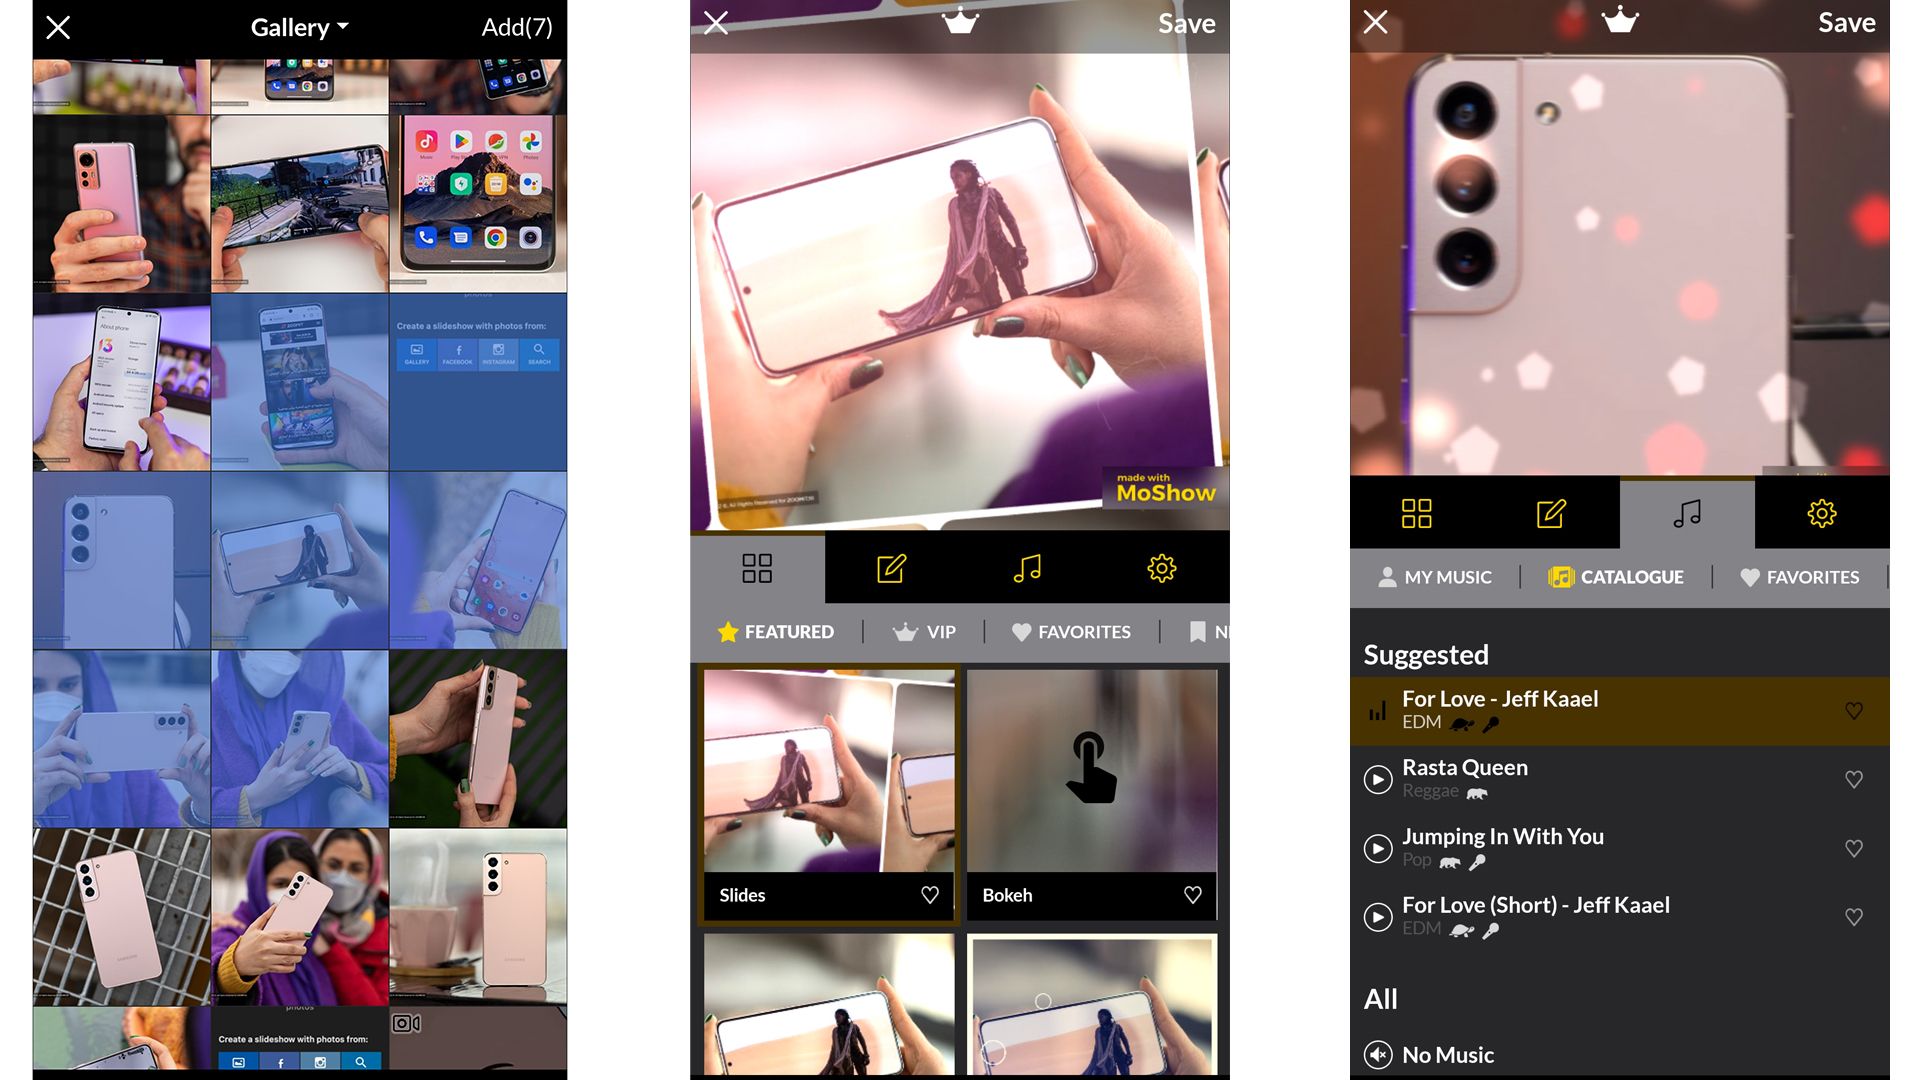 اپلیکیشن MoShow - Slideshow Maker, Photo و محیط کاربری آن